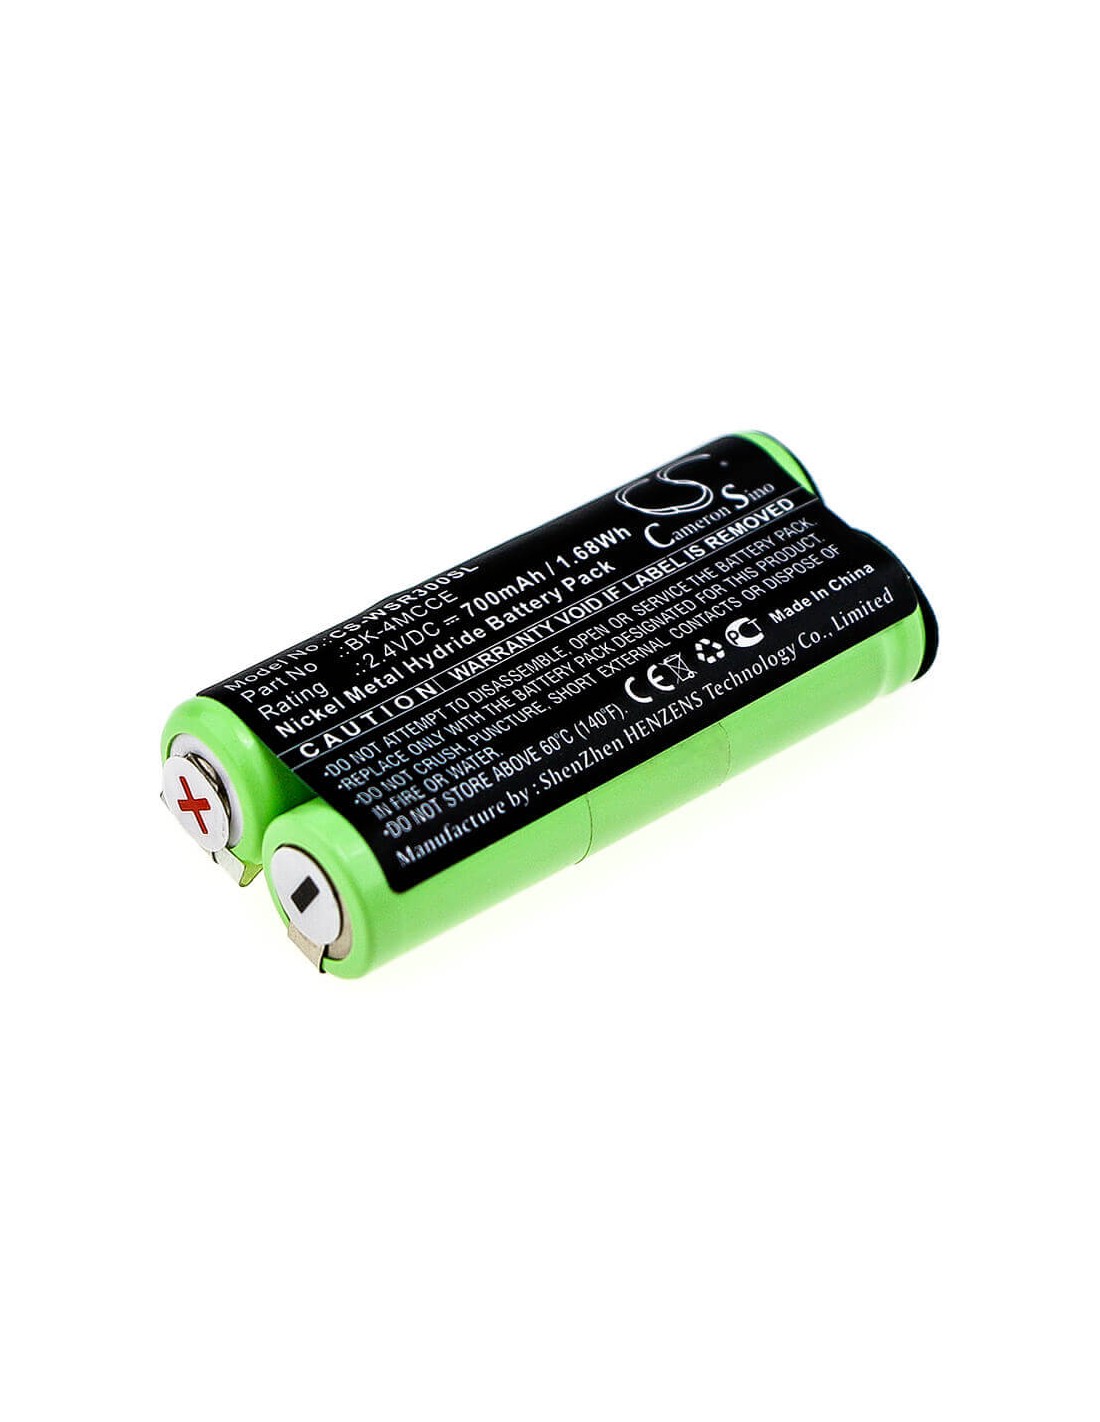 Battery for Waterpik, Sensonic Plus Sr-3000, Sensonic Plus Sr-3000e, 2.4V, 700mAh - 1.68Wh